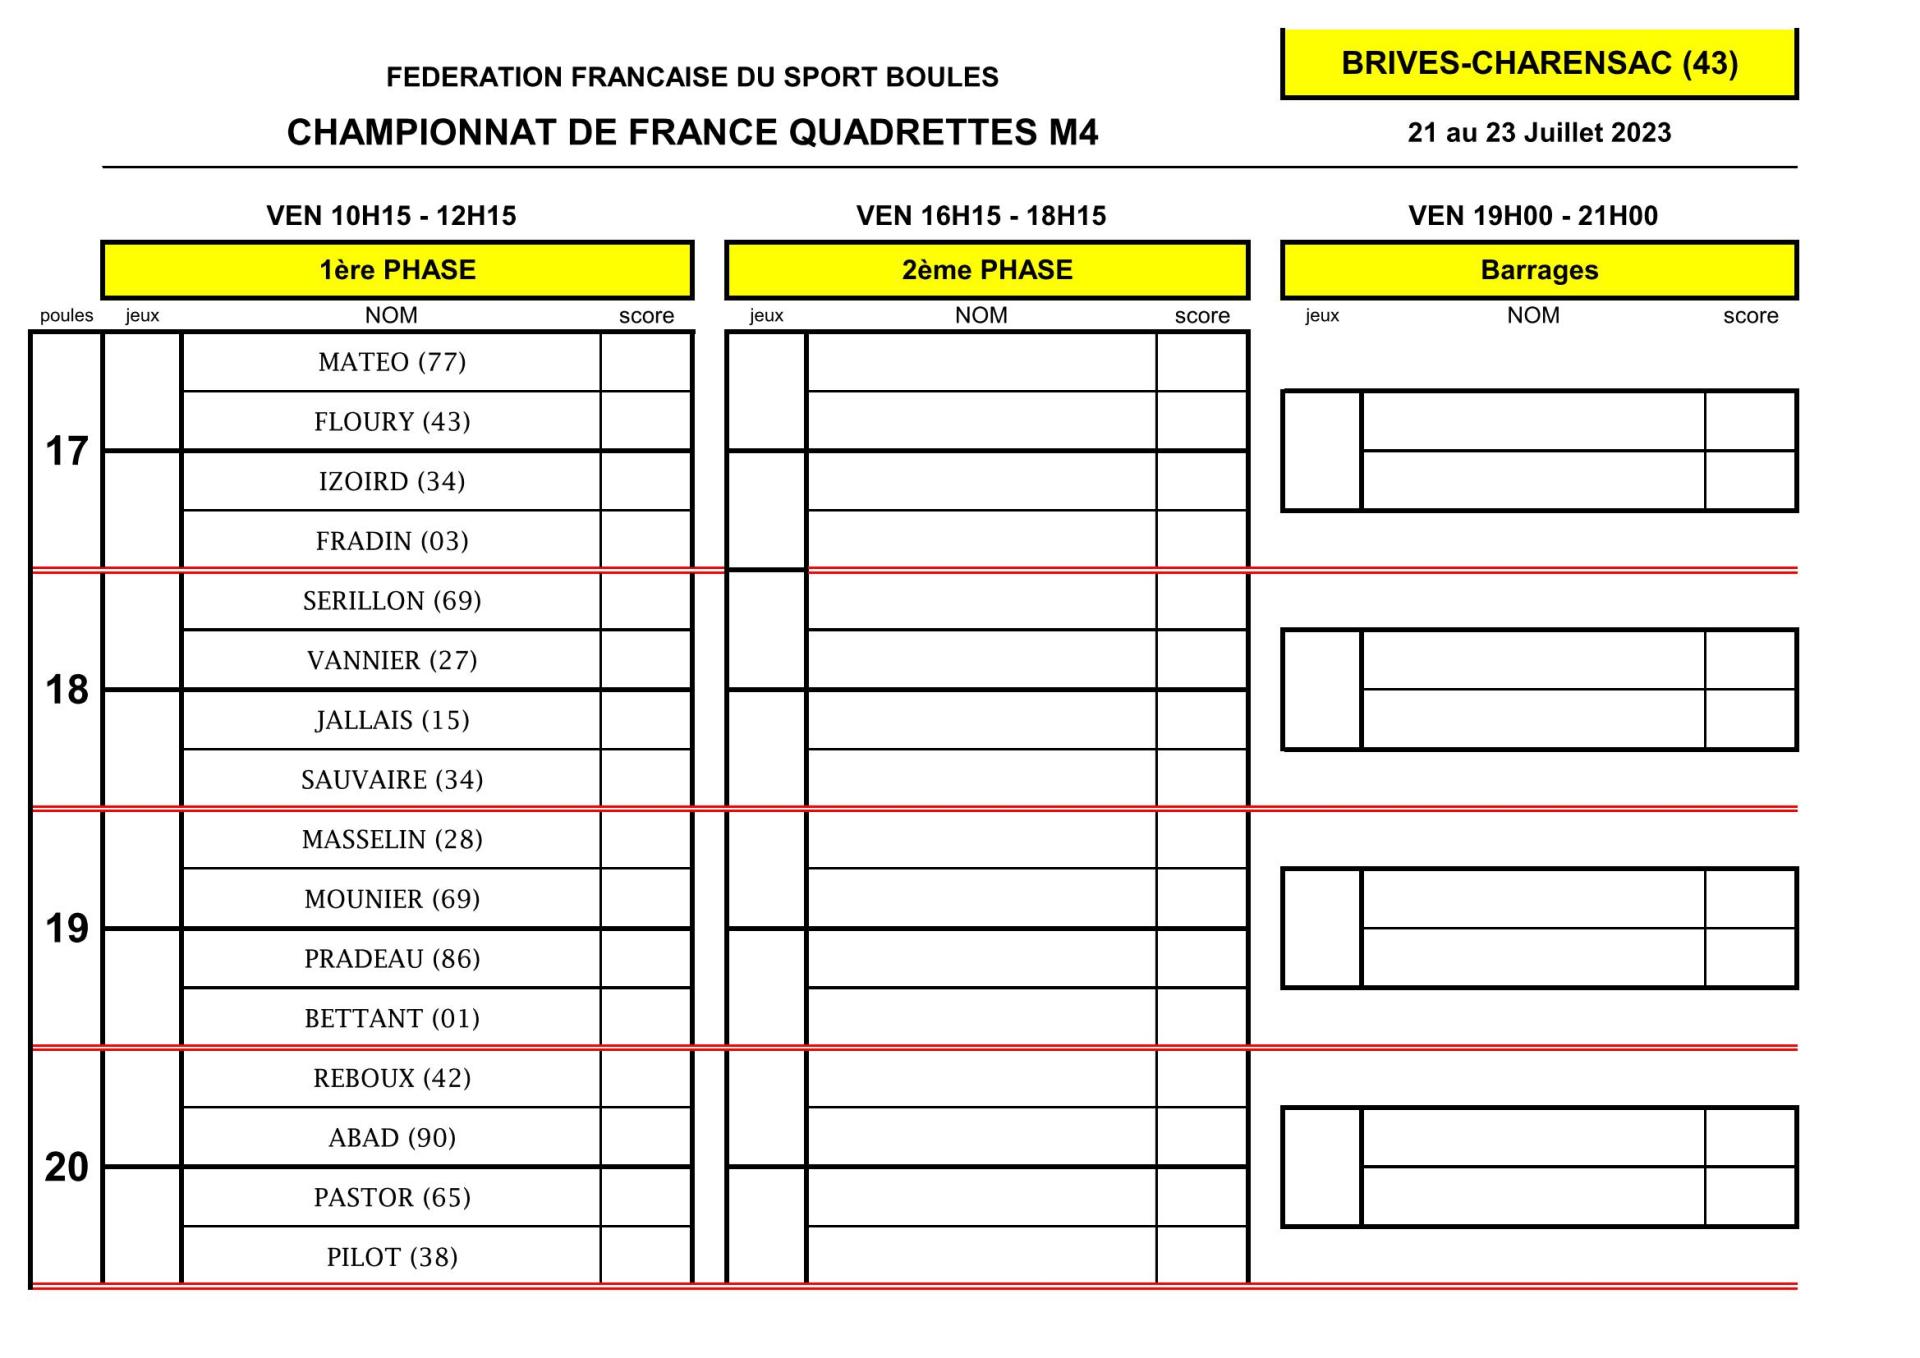 Tirage Quadr. Champ. de France M4